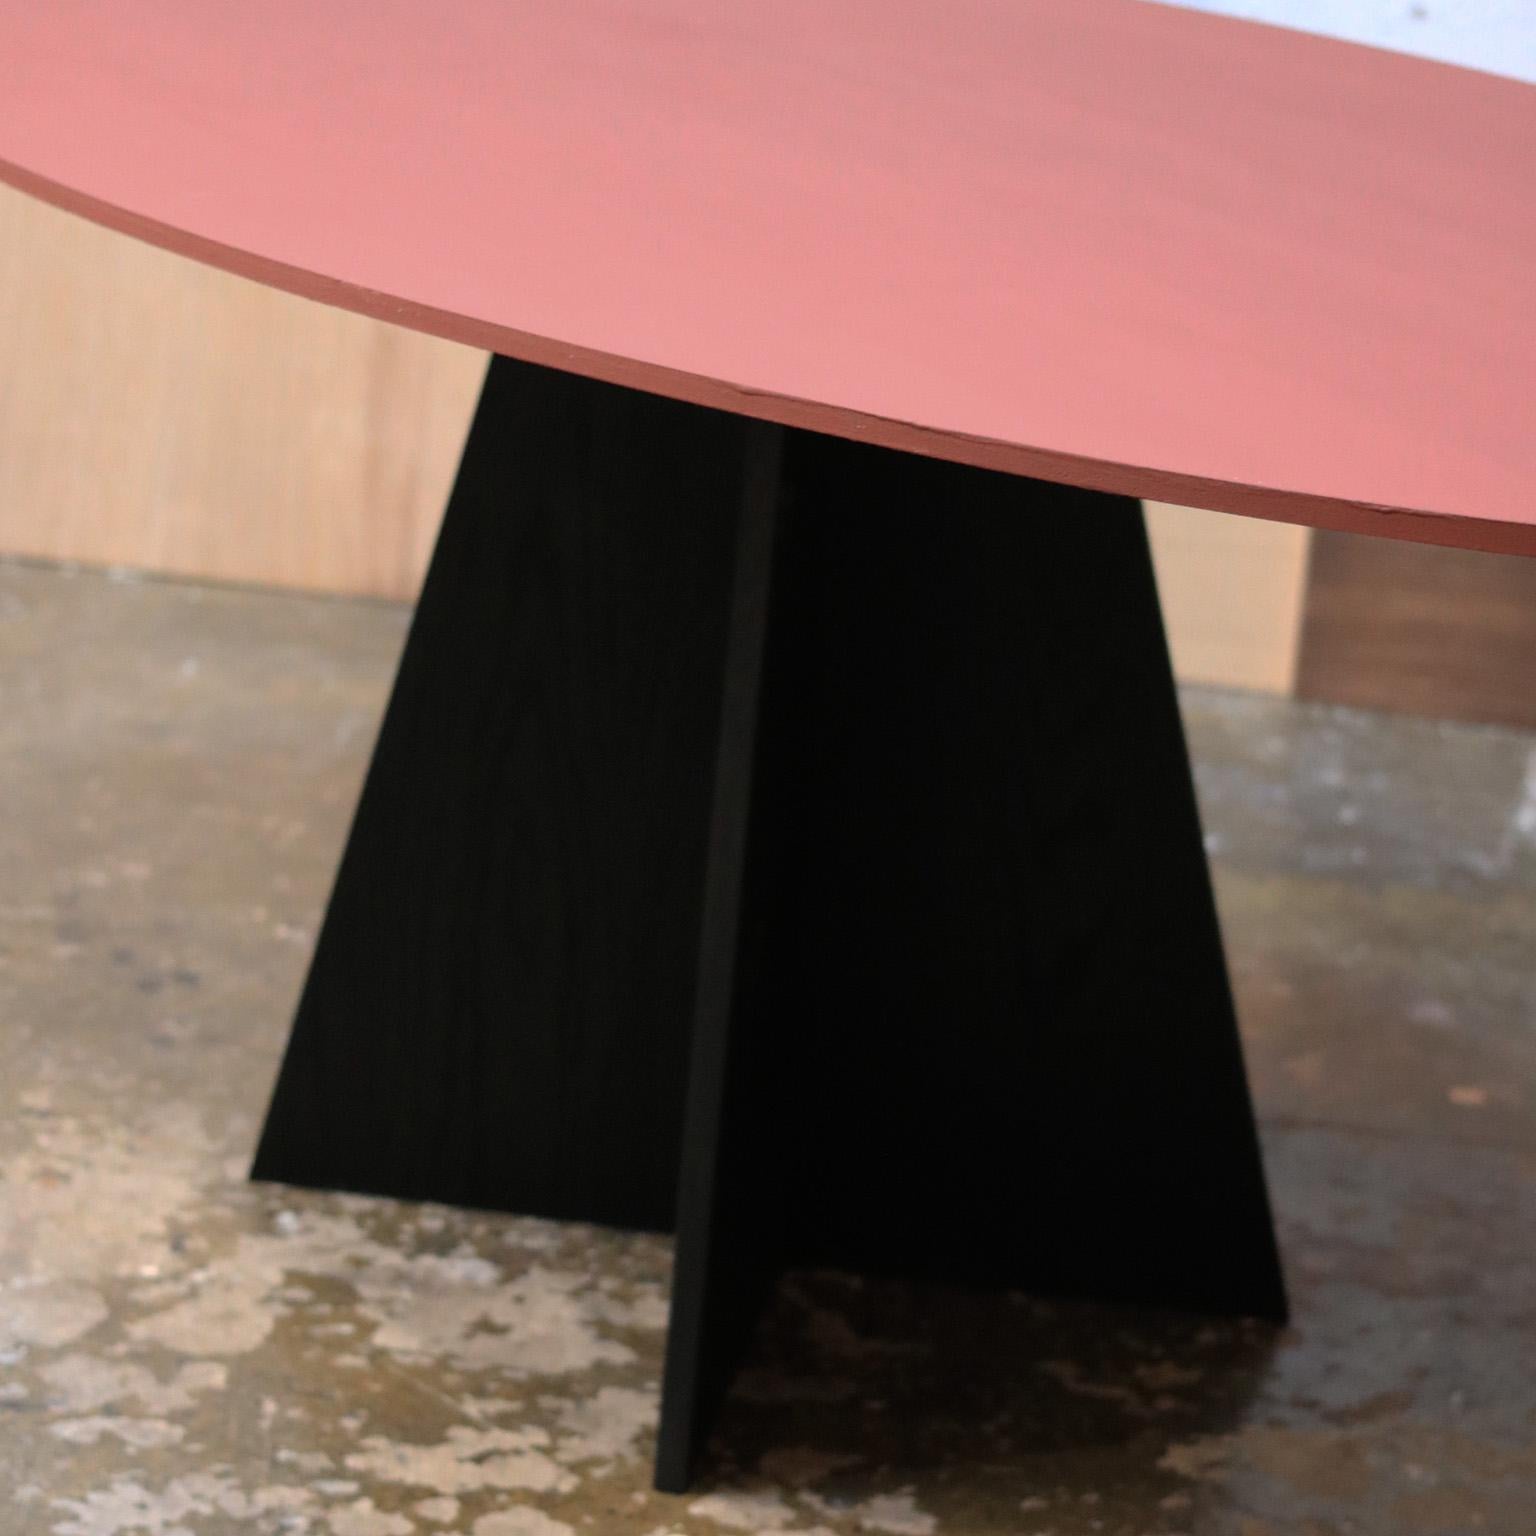 La table Aether est dotée d'un plateau en cerisier massif, peint selon les spécifications du client.  Le plateau de la table est ici présenté en 